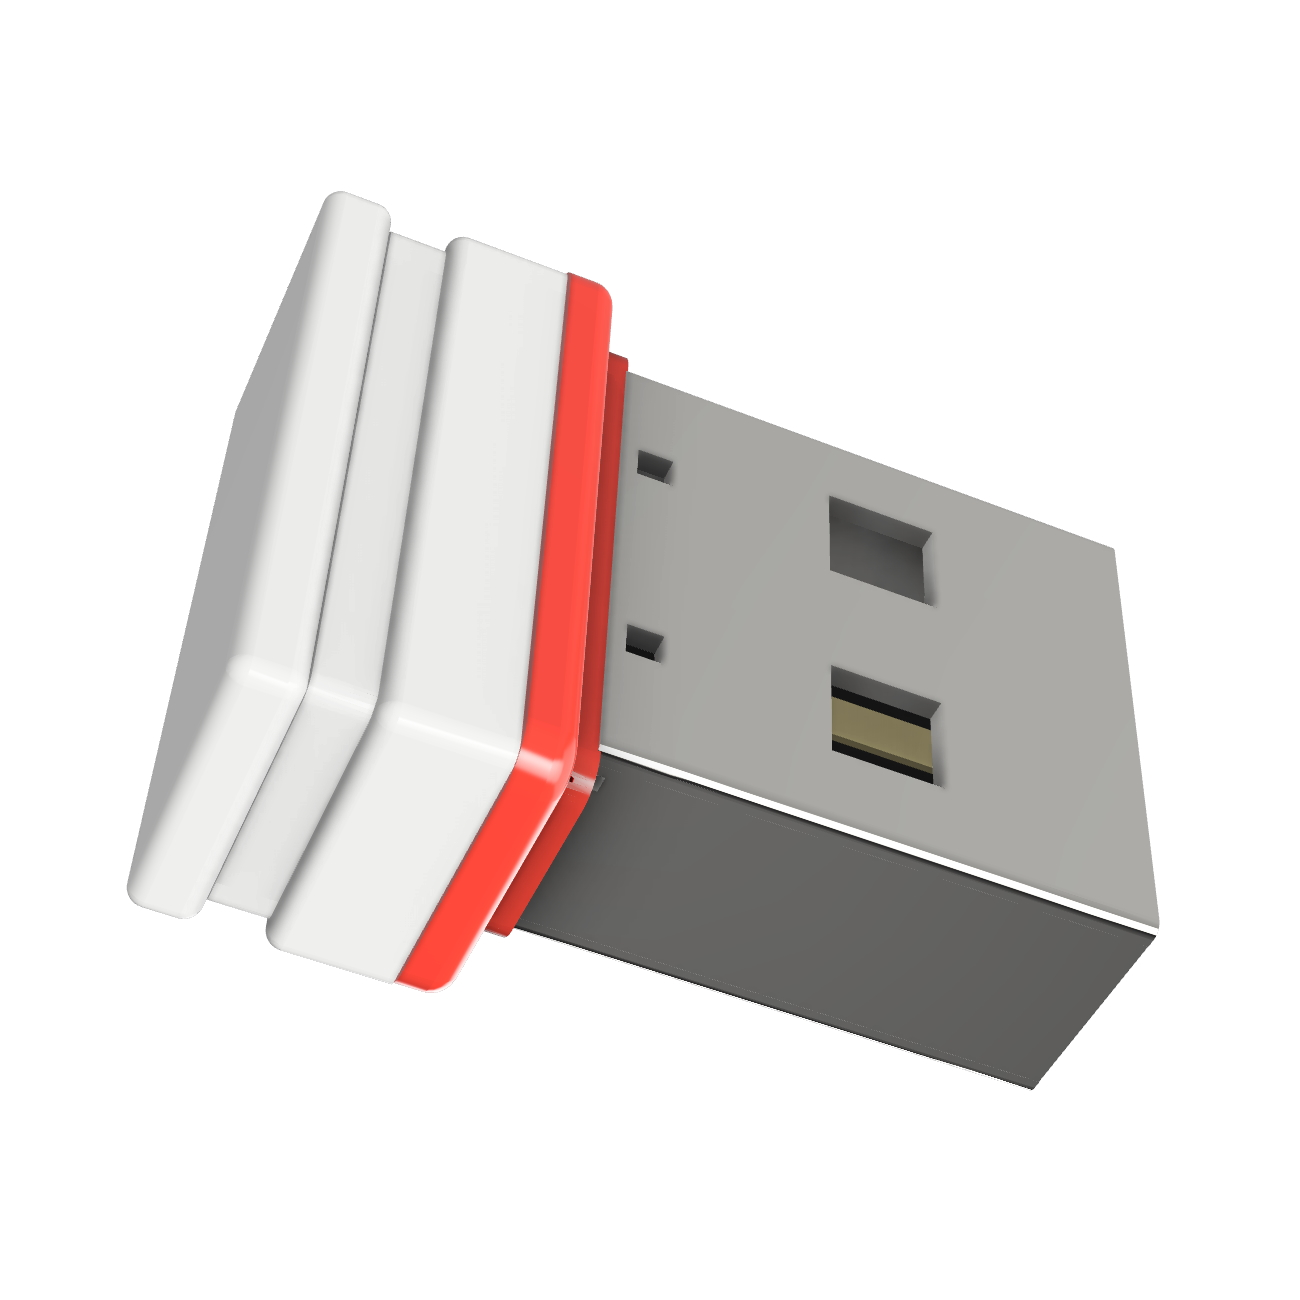 P1 USB GB) ®ULTRA 4 Mini USB-Stick (Weiss/Rot, GERMANY